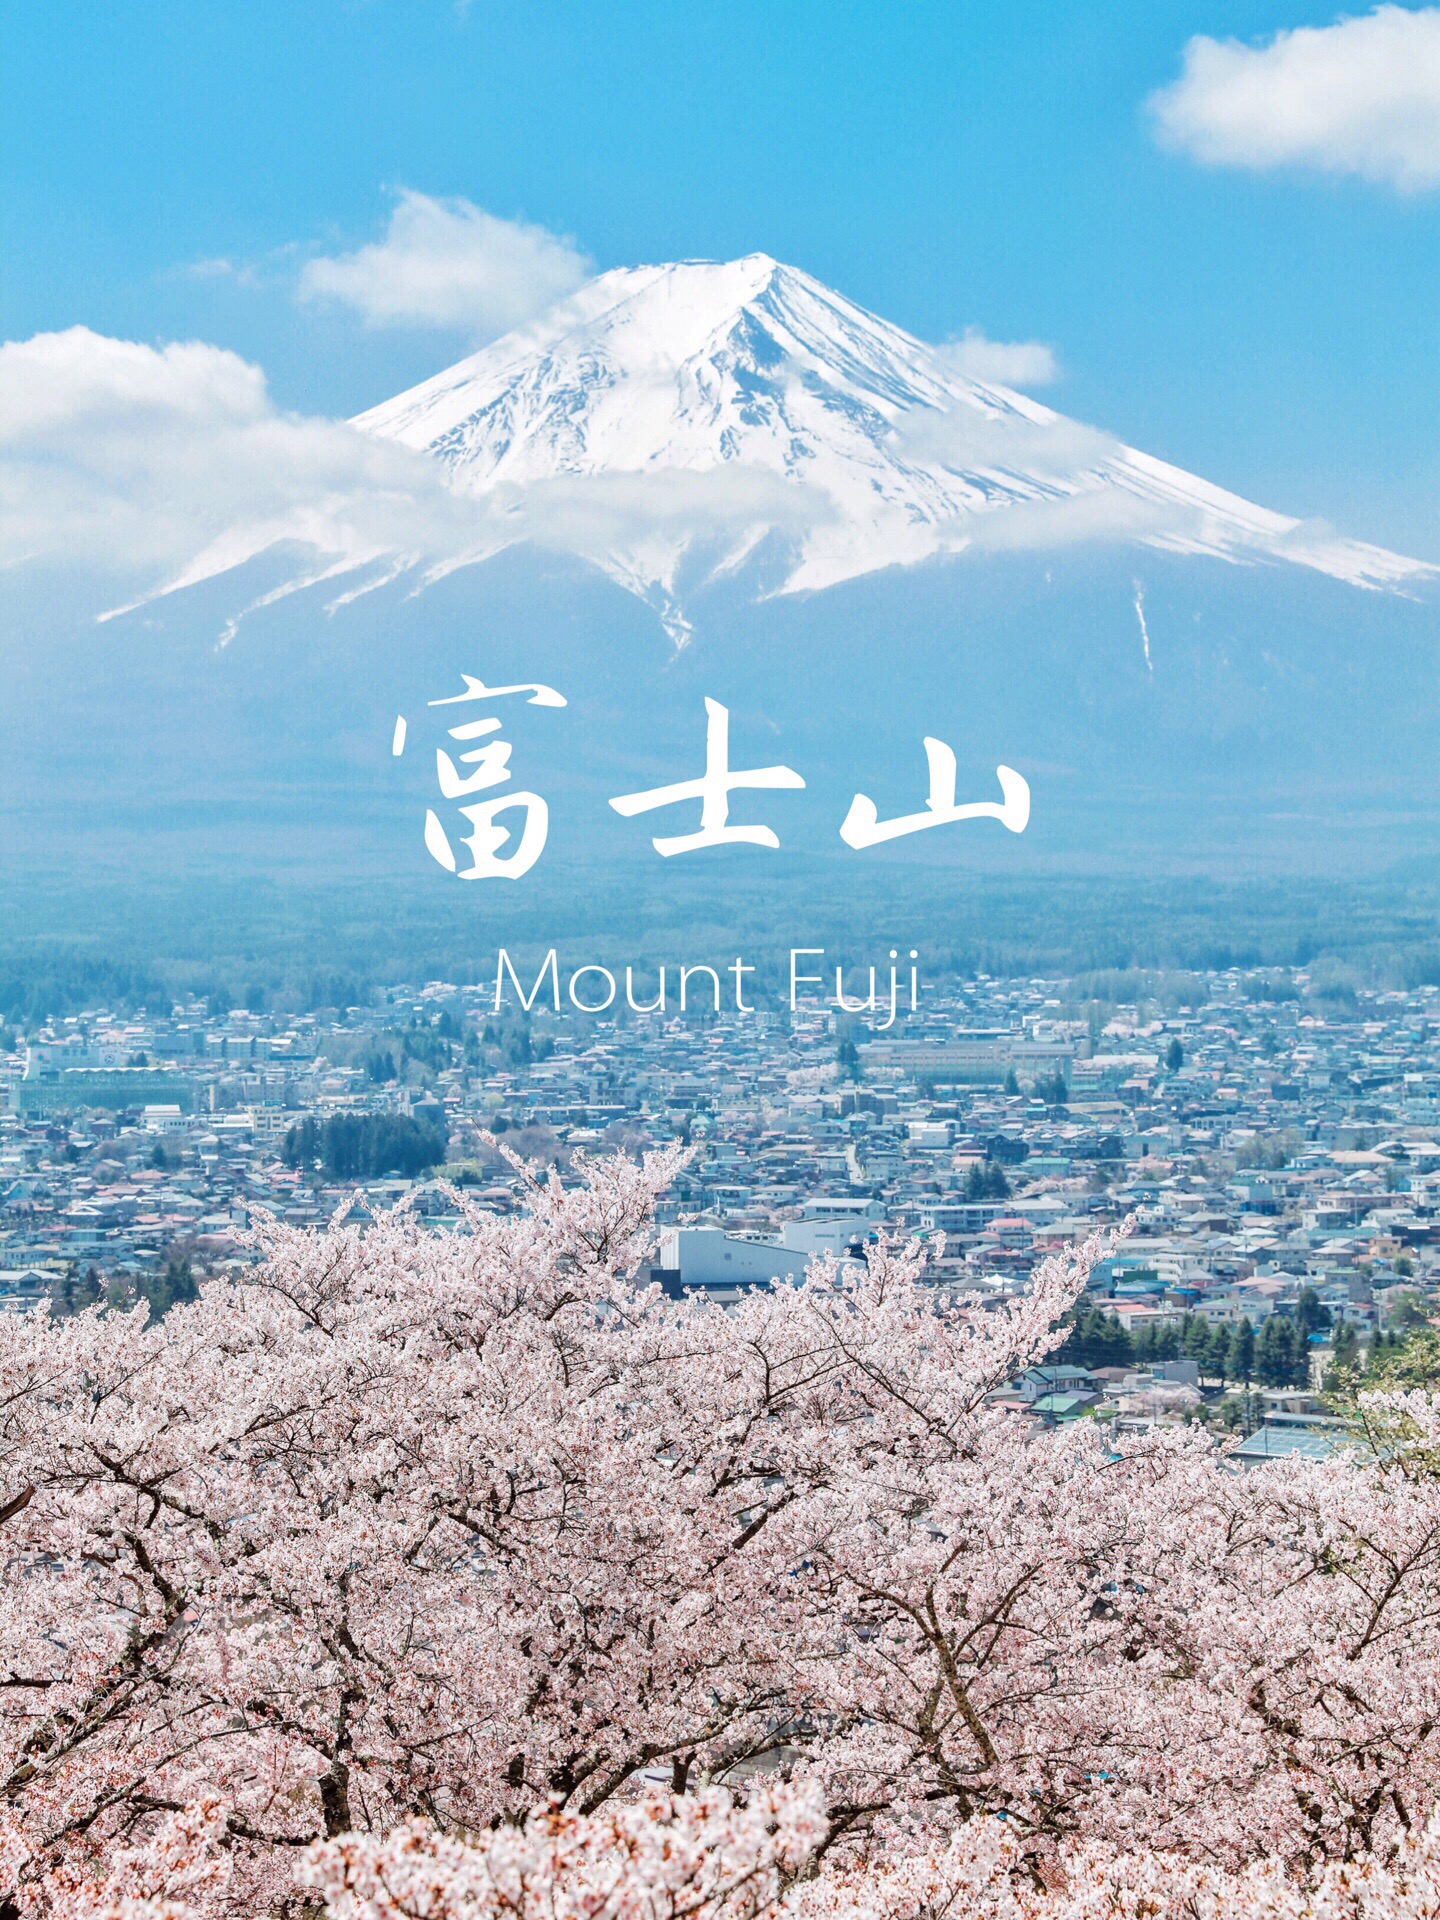 Japan Mt. Fuji | Kawaguchiko 3 | Trip.com Fujikawaguchiko